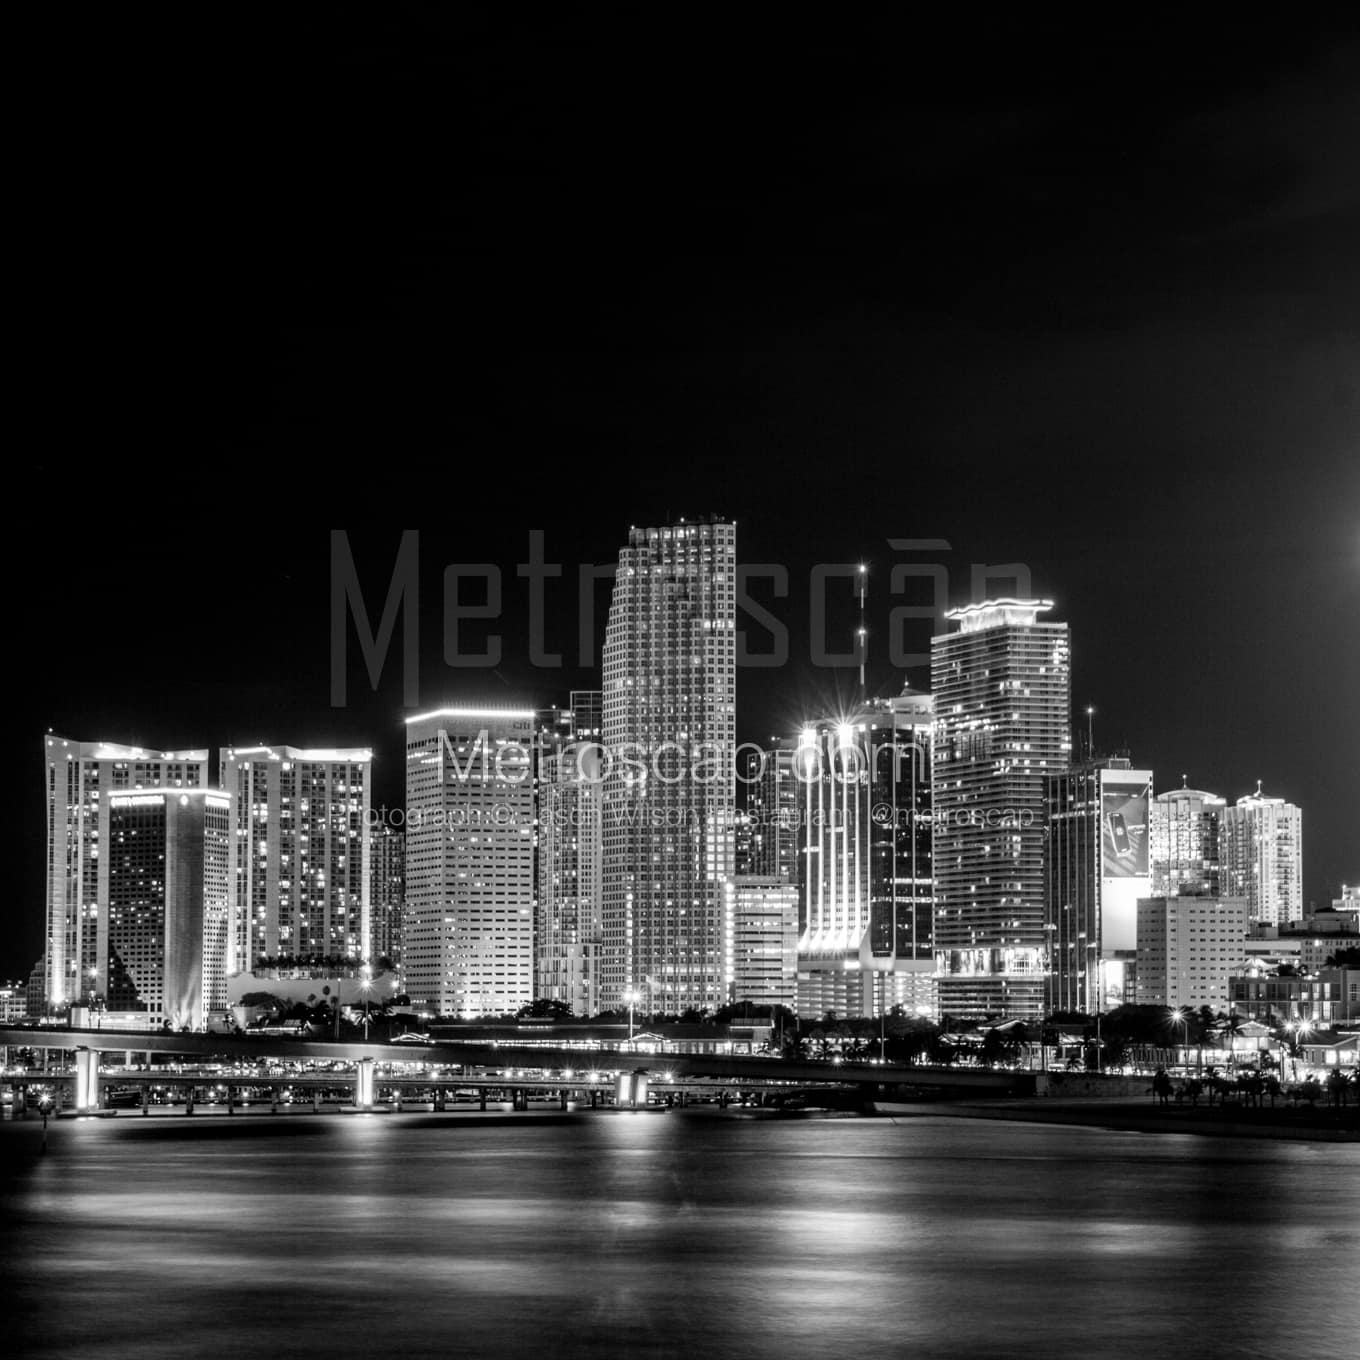 Miami Black & White Landscape Photography